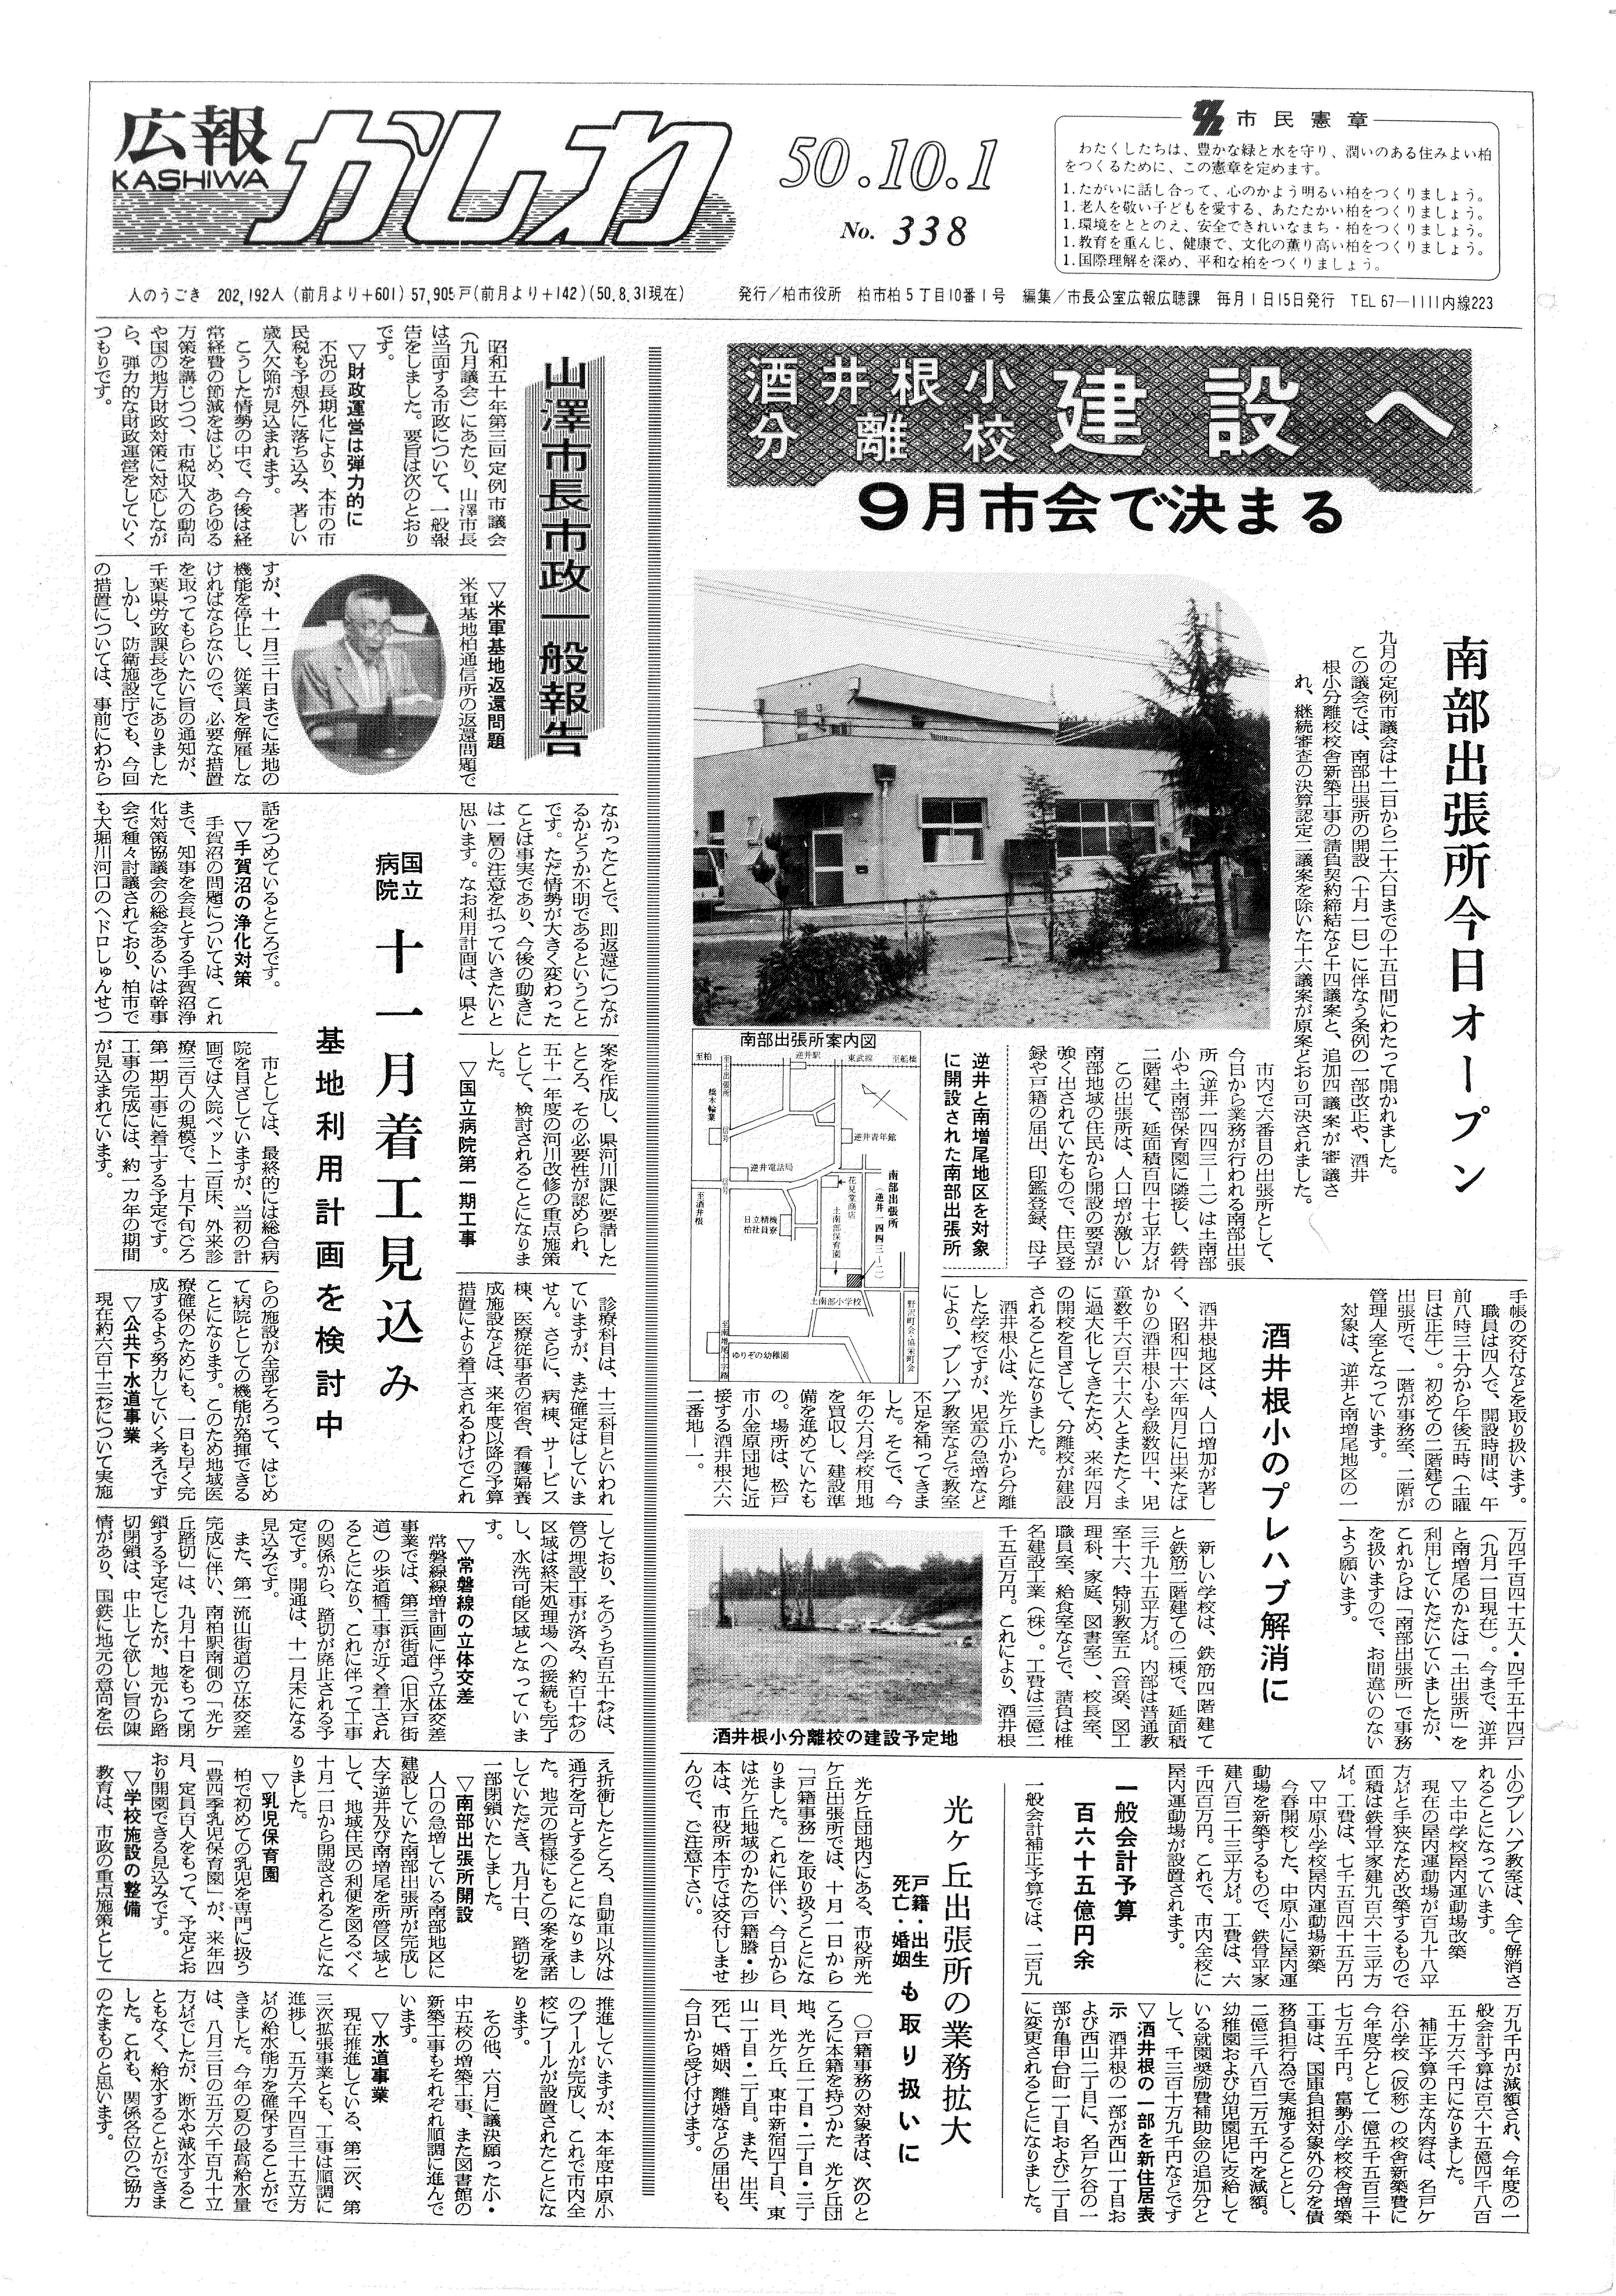 広報かしわ　昭和50年10月1日発行　338号